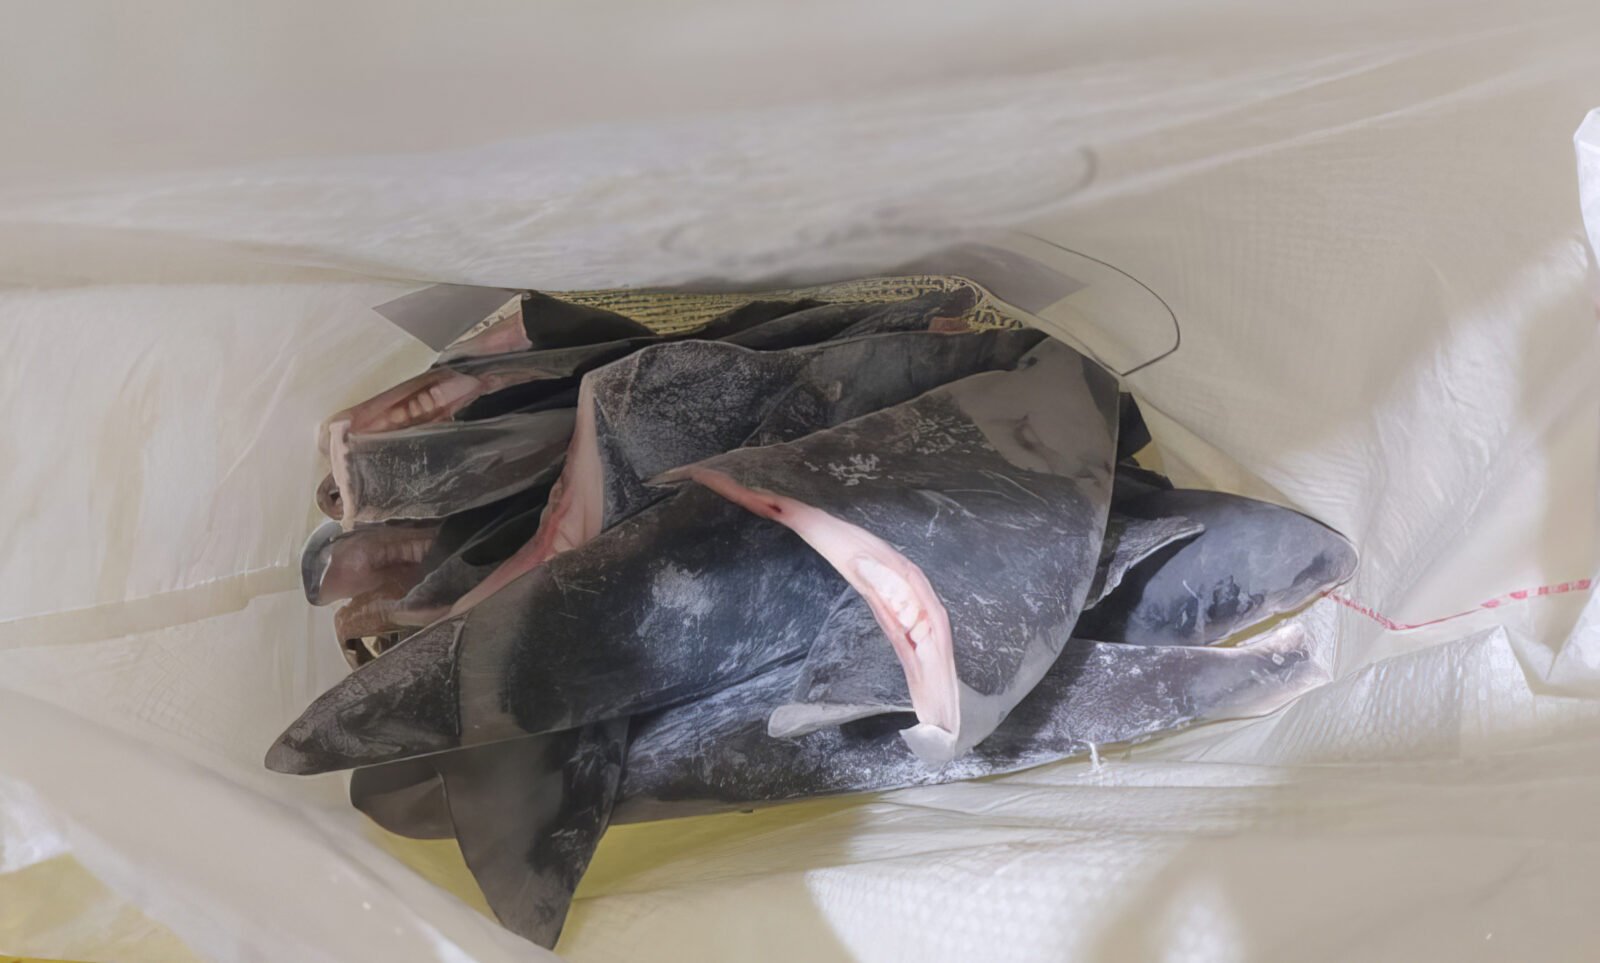 O Ibama apreendeu 28,7 toneladas de barbatanas de tubarão que seriam exportadas, ilegalmente, para a Ásia. As barbatanas declaradas são de duas espécies de tubarão: tubarão Azul (Prionace glauca) e tubarão Anequim, também conhecido como Mako Por: Ibama/Gov. Br